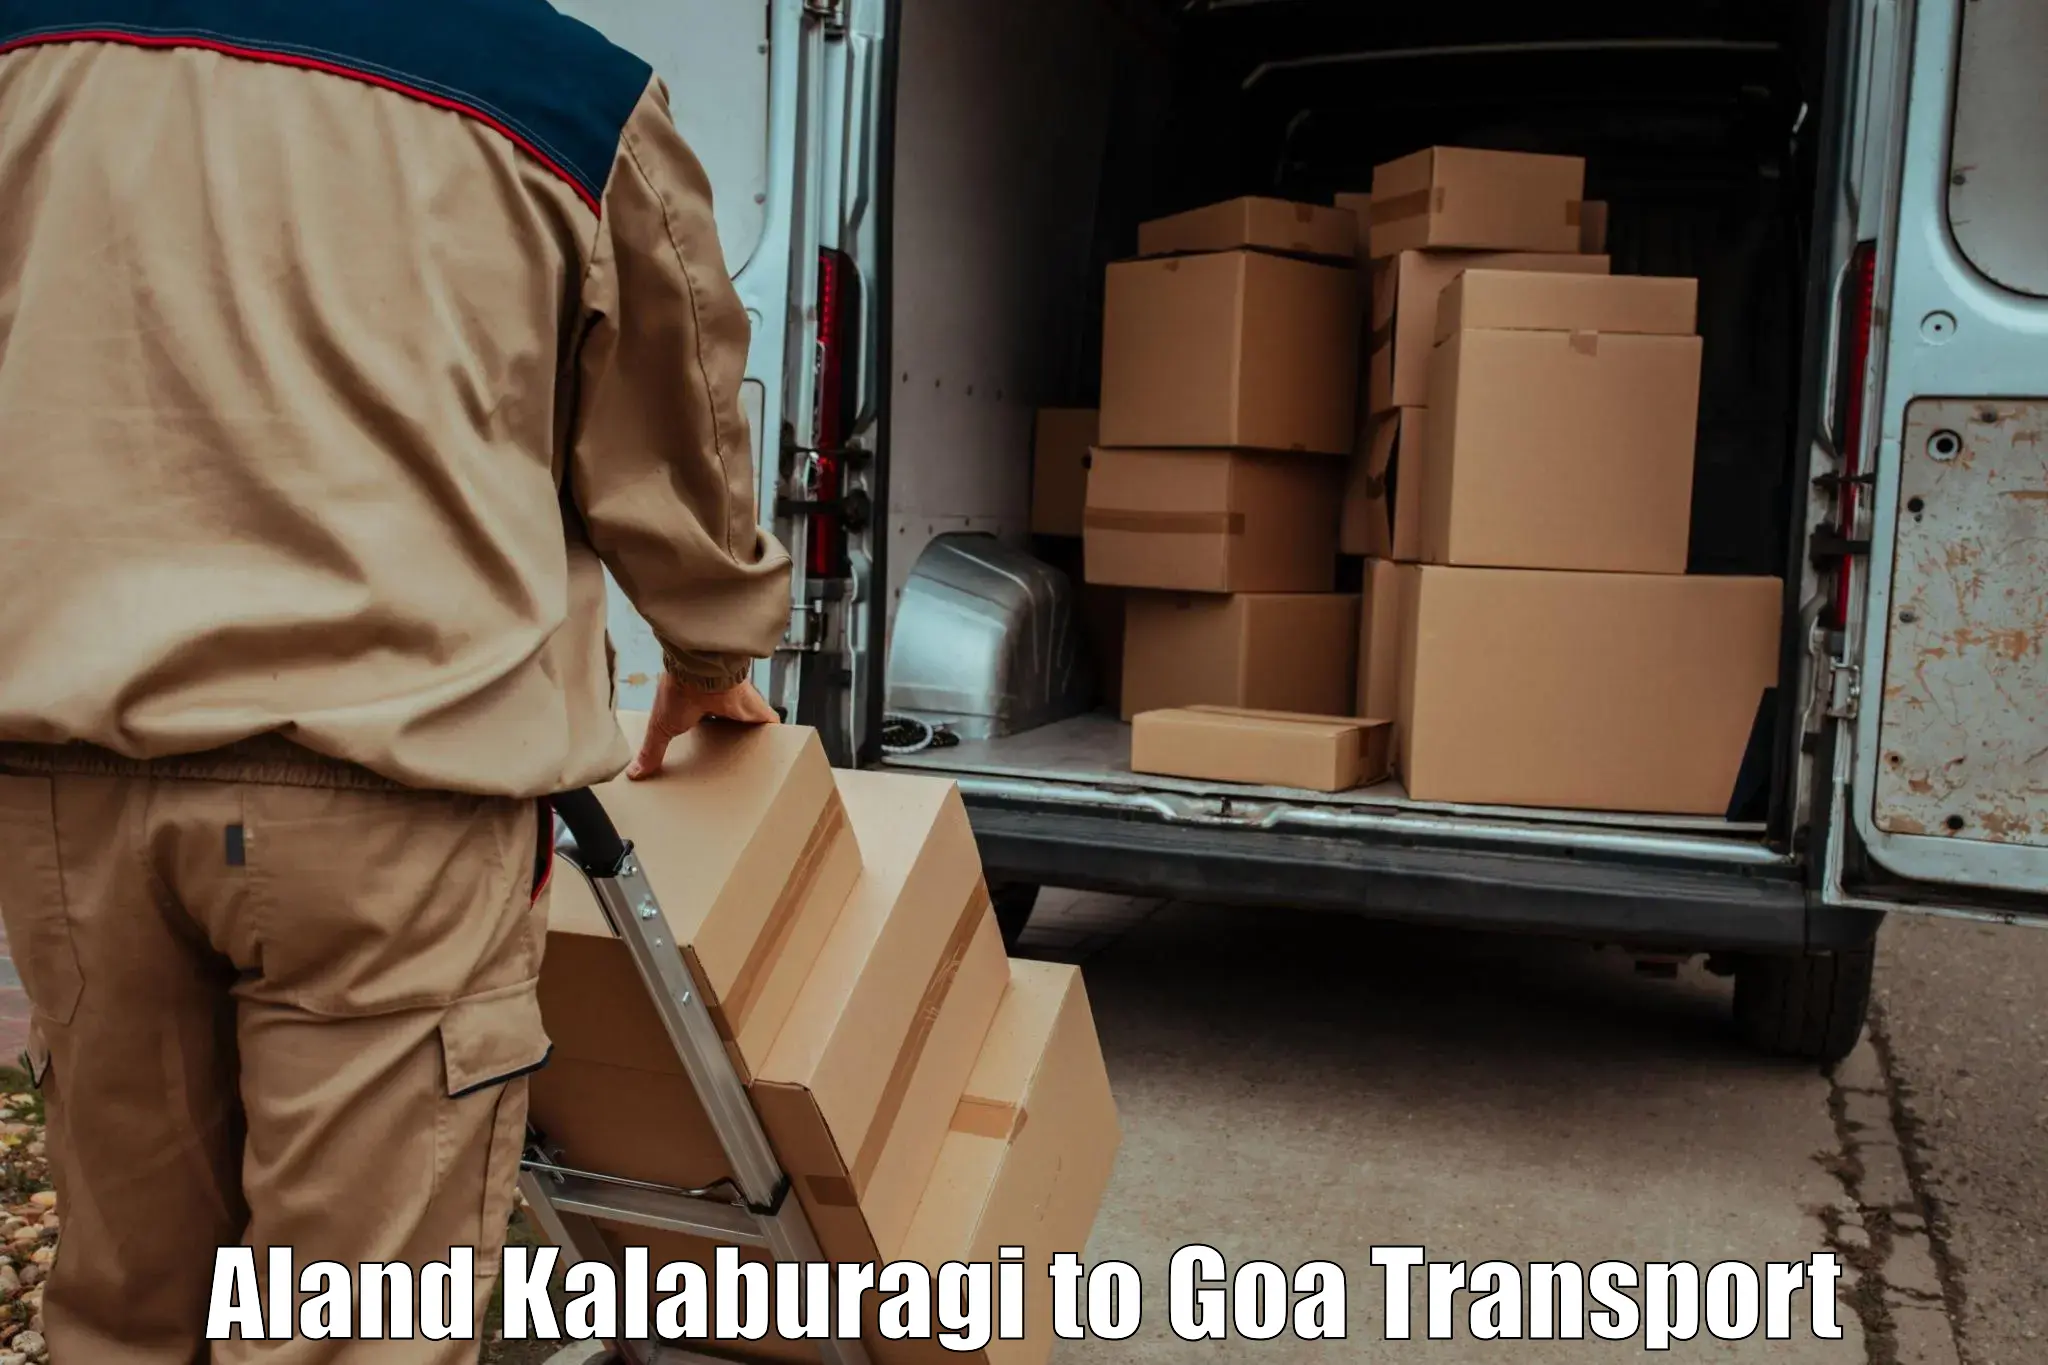 Door to door transport services in Aland Kalaburagi to South Goa